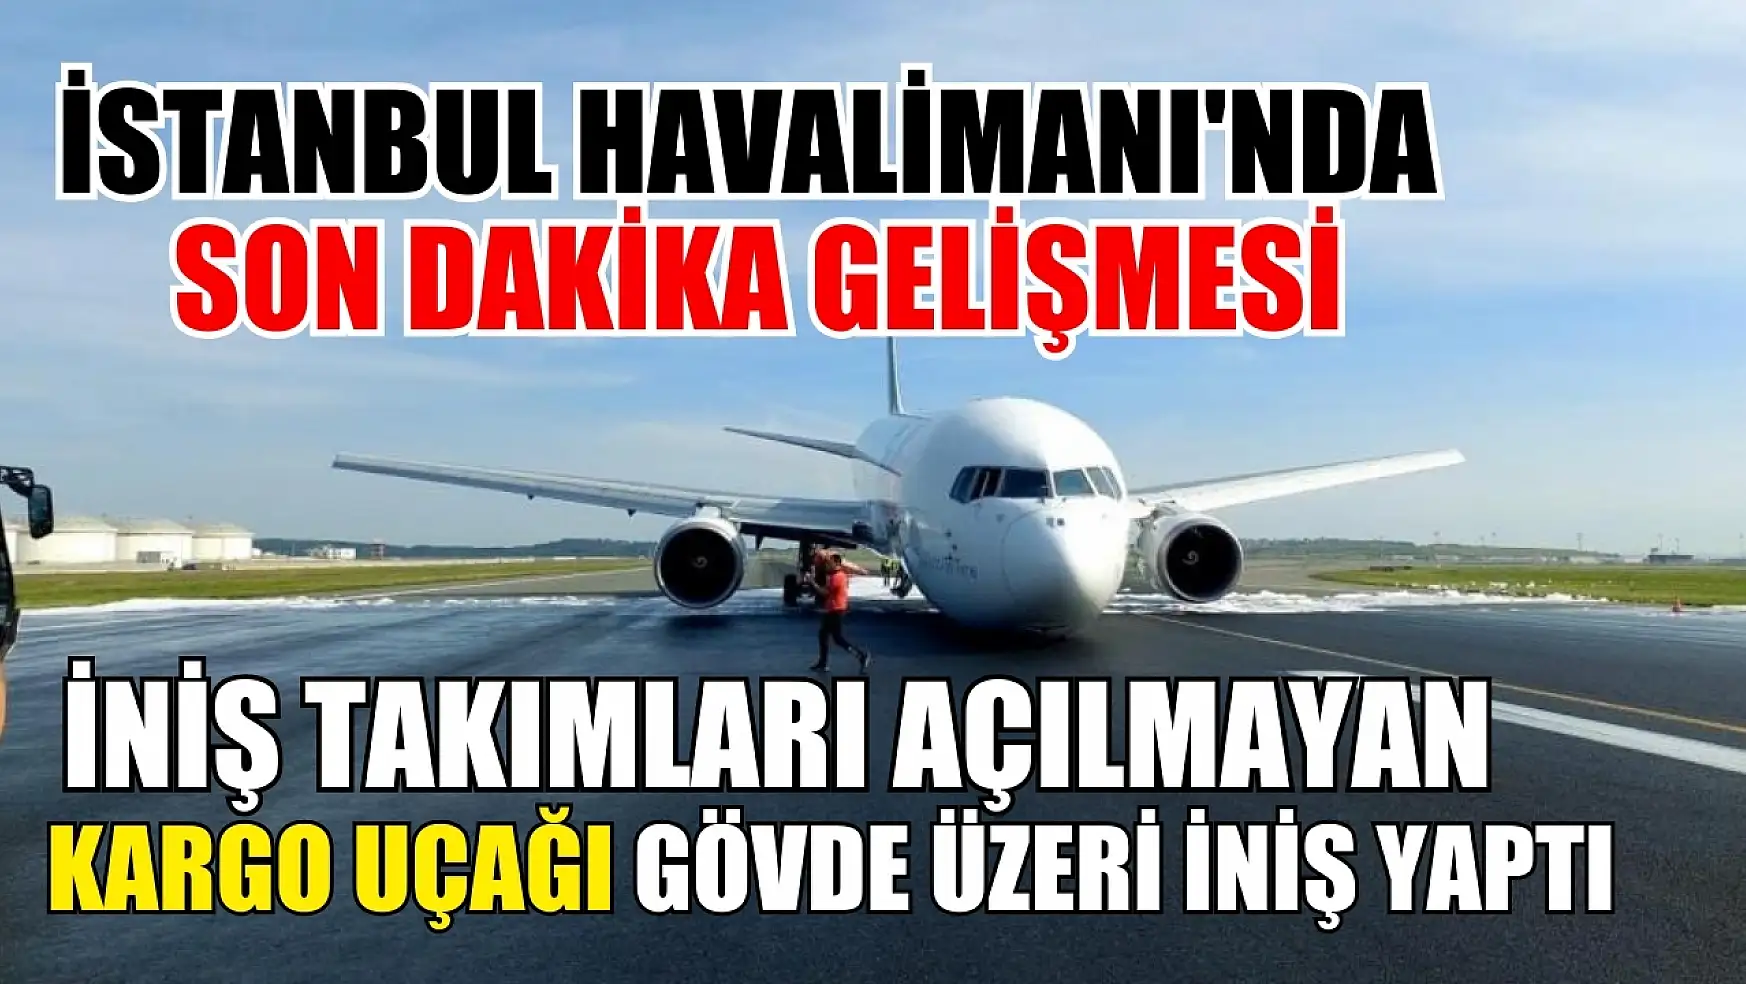 İstanbul Havalimanı'nda son dakika gelişmesi: İniş takımları açılmayan kargo uçağı gövde üzeri iniş yaptı